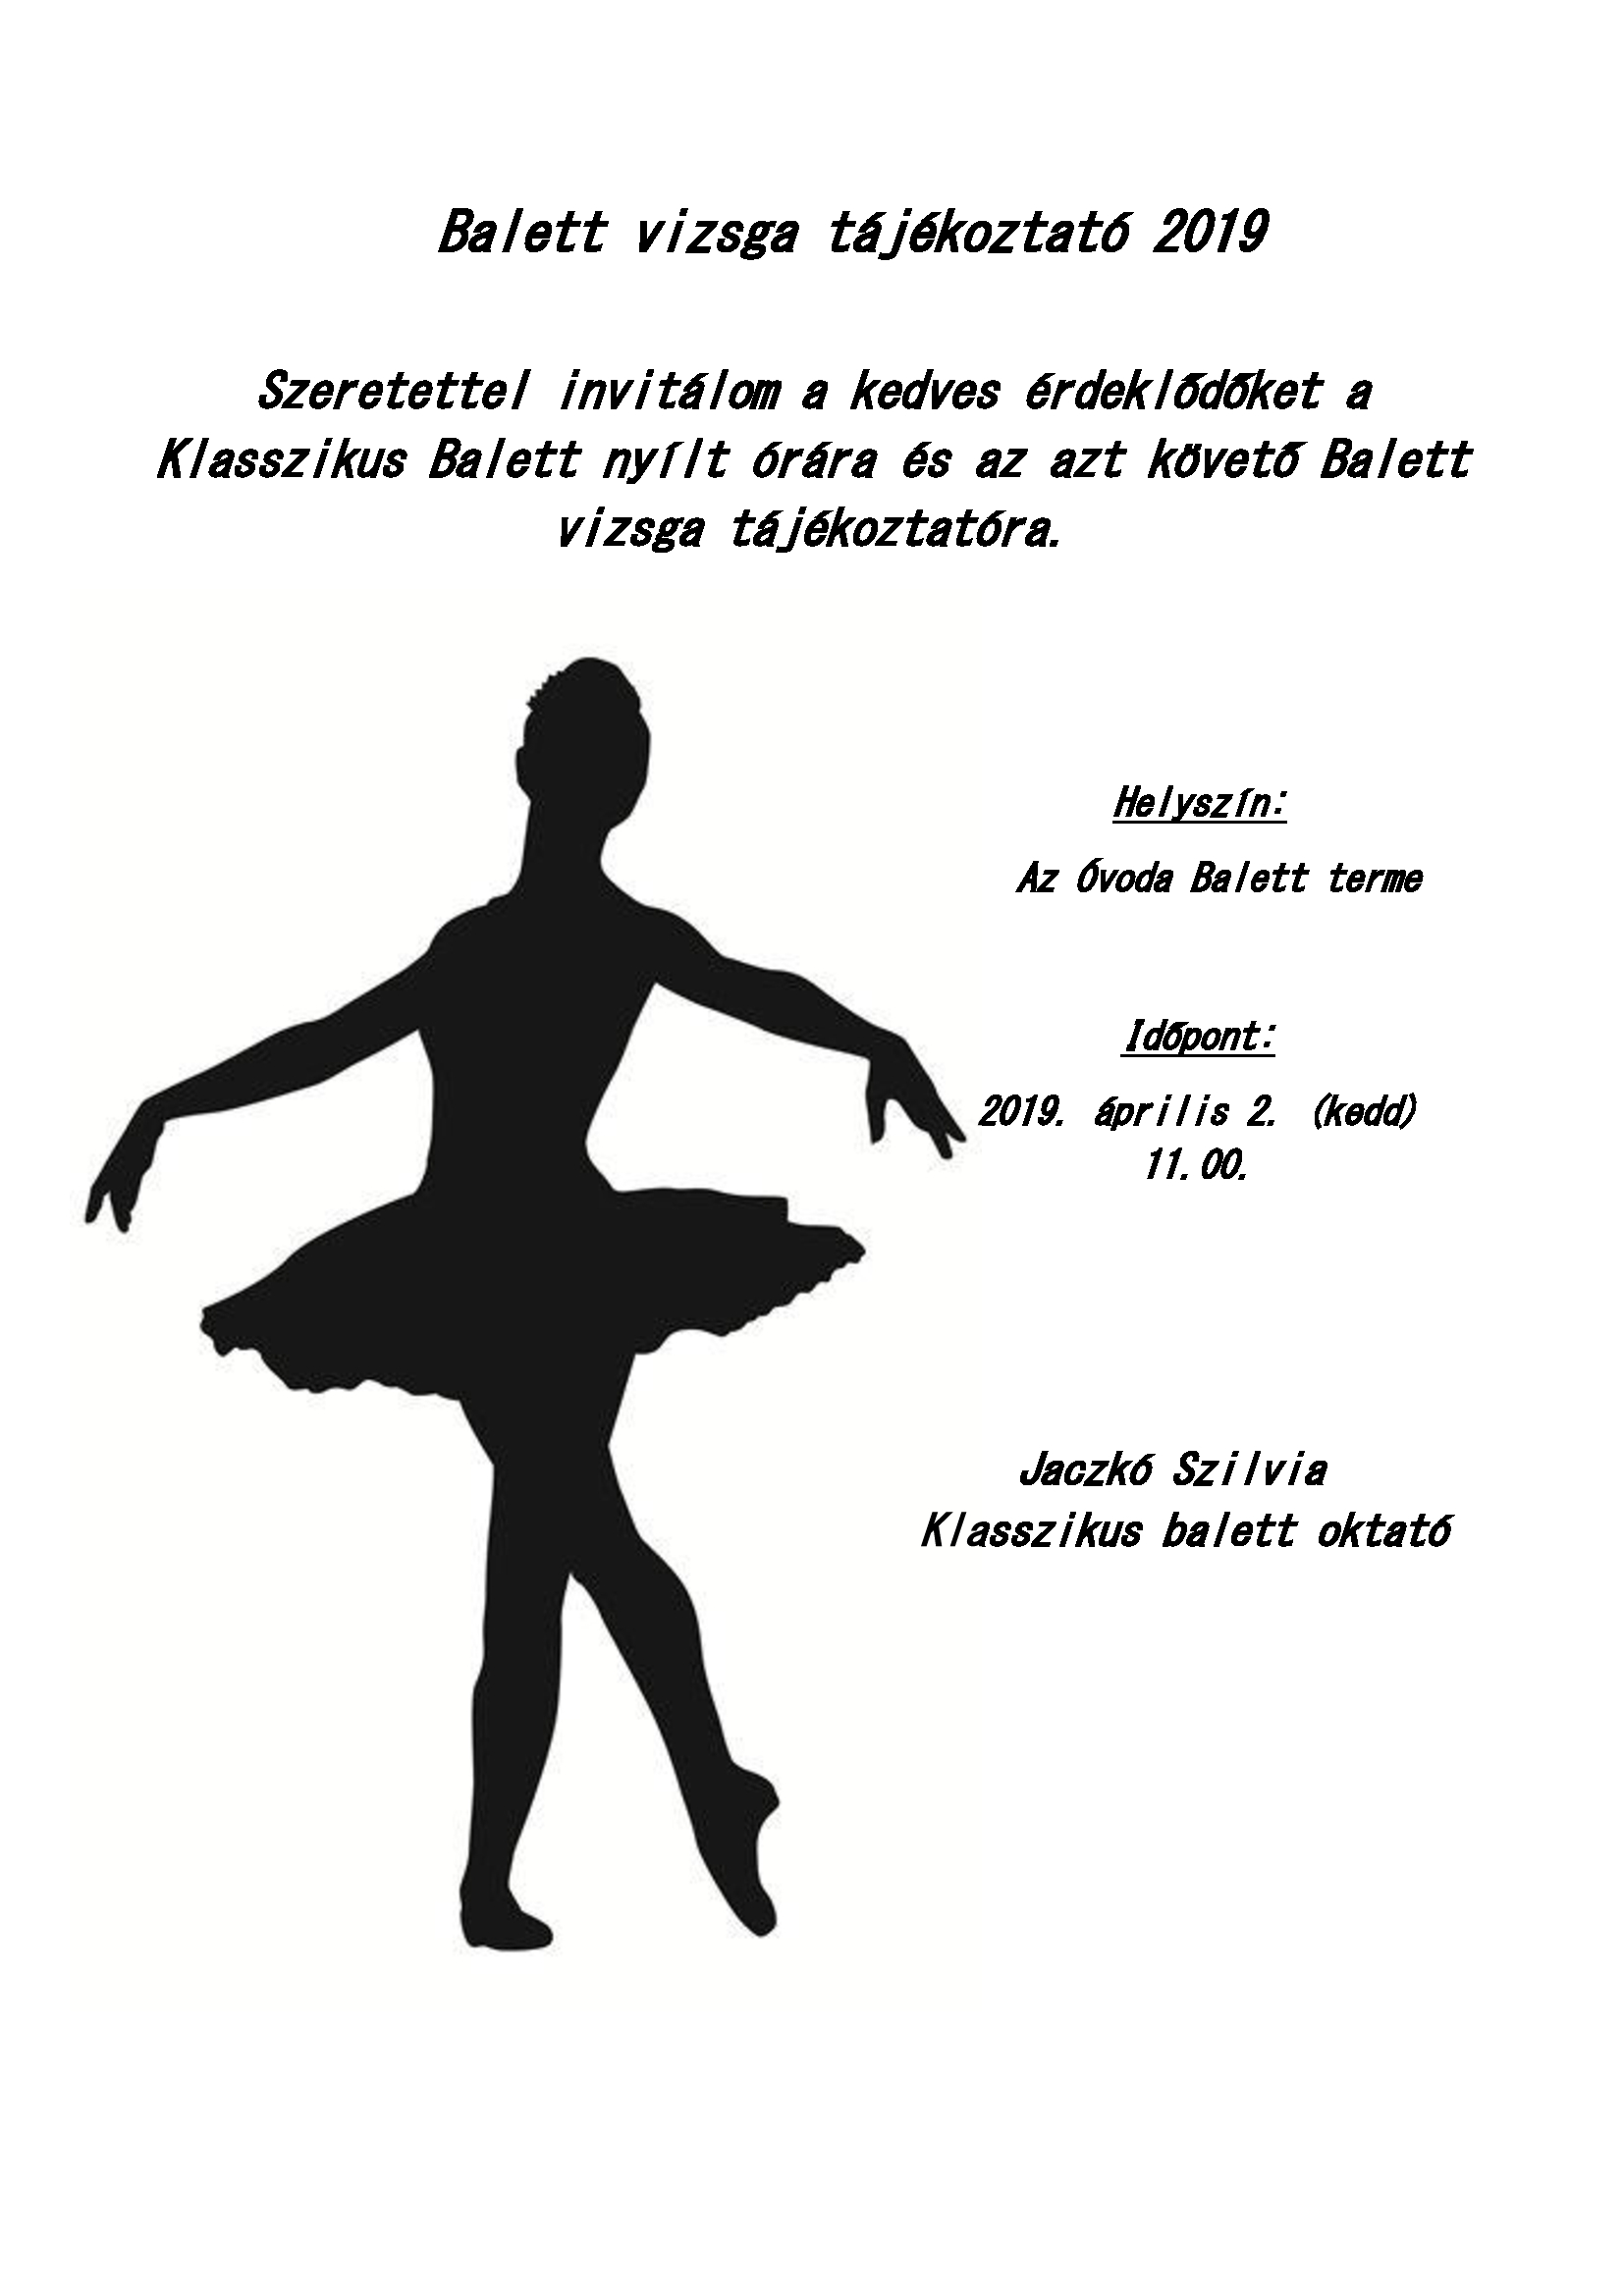 Balett vizsga tájékoztató